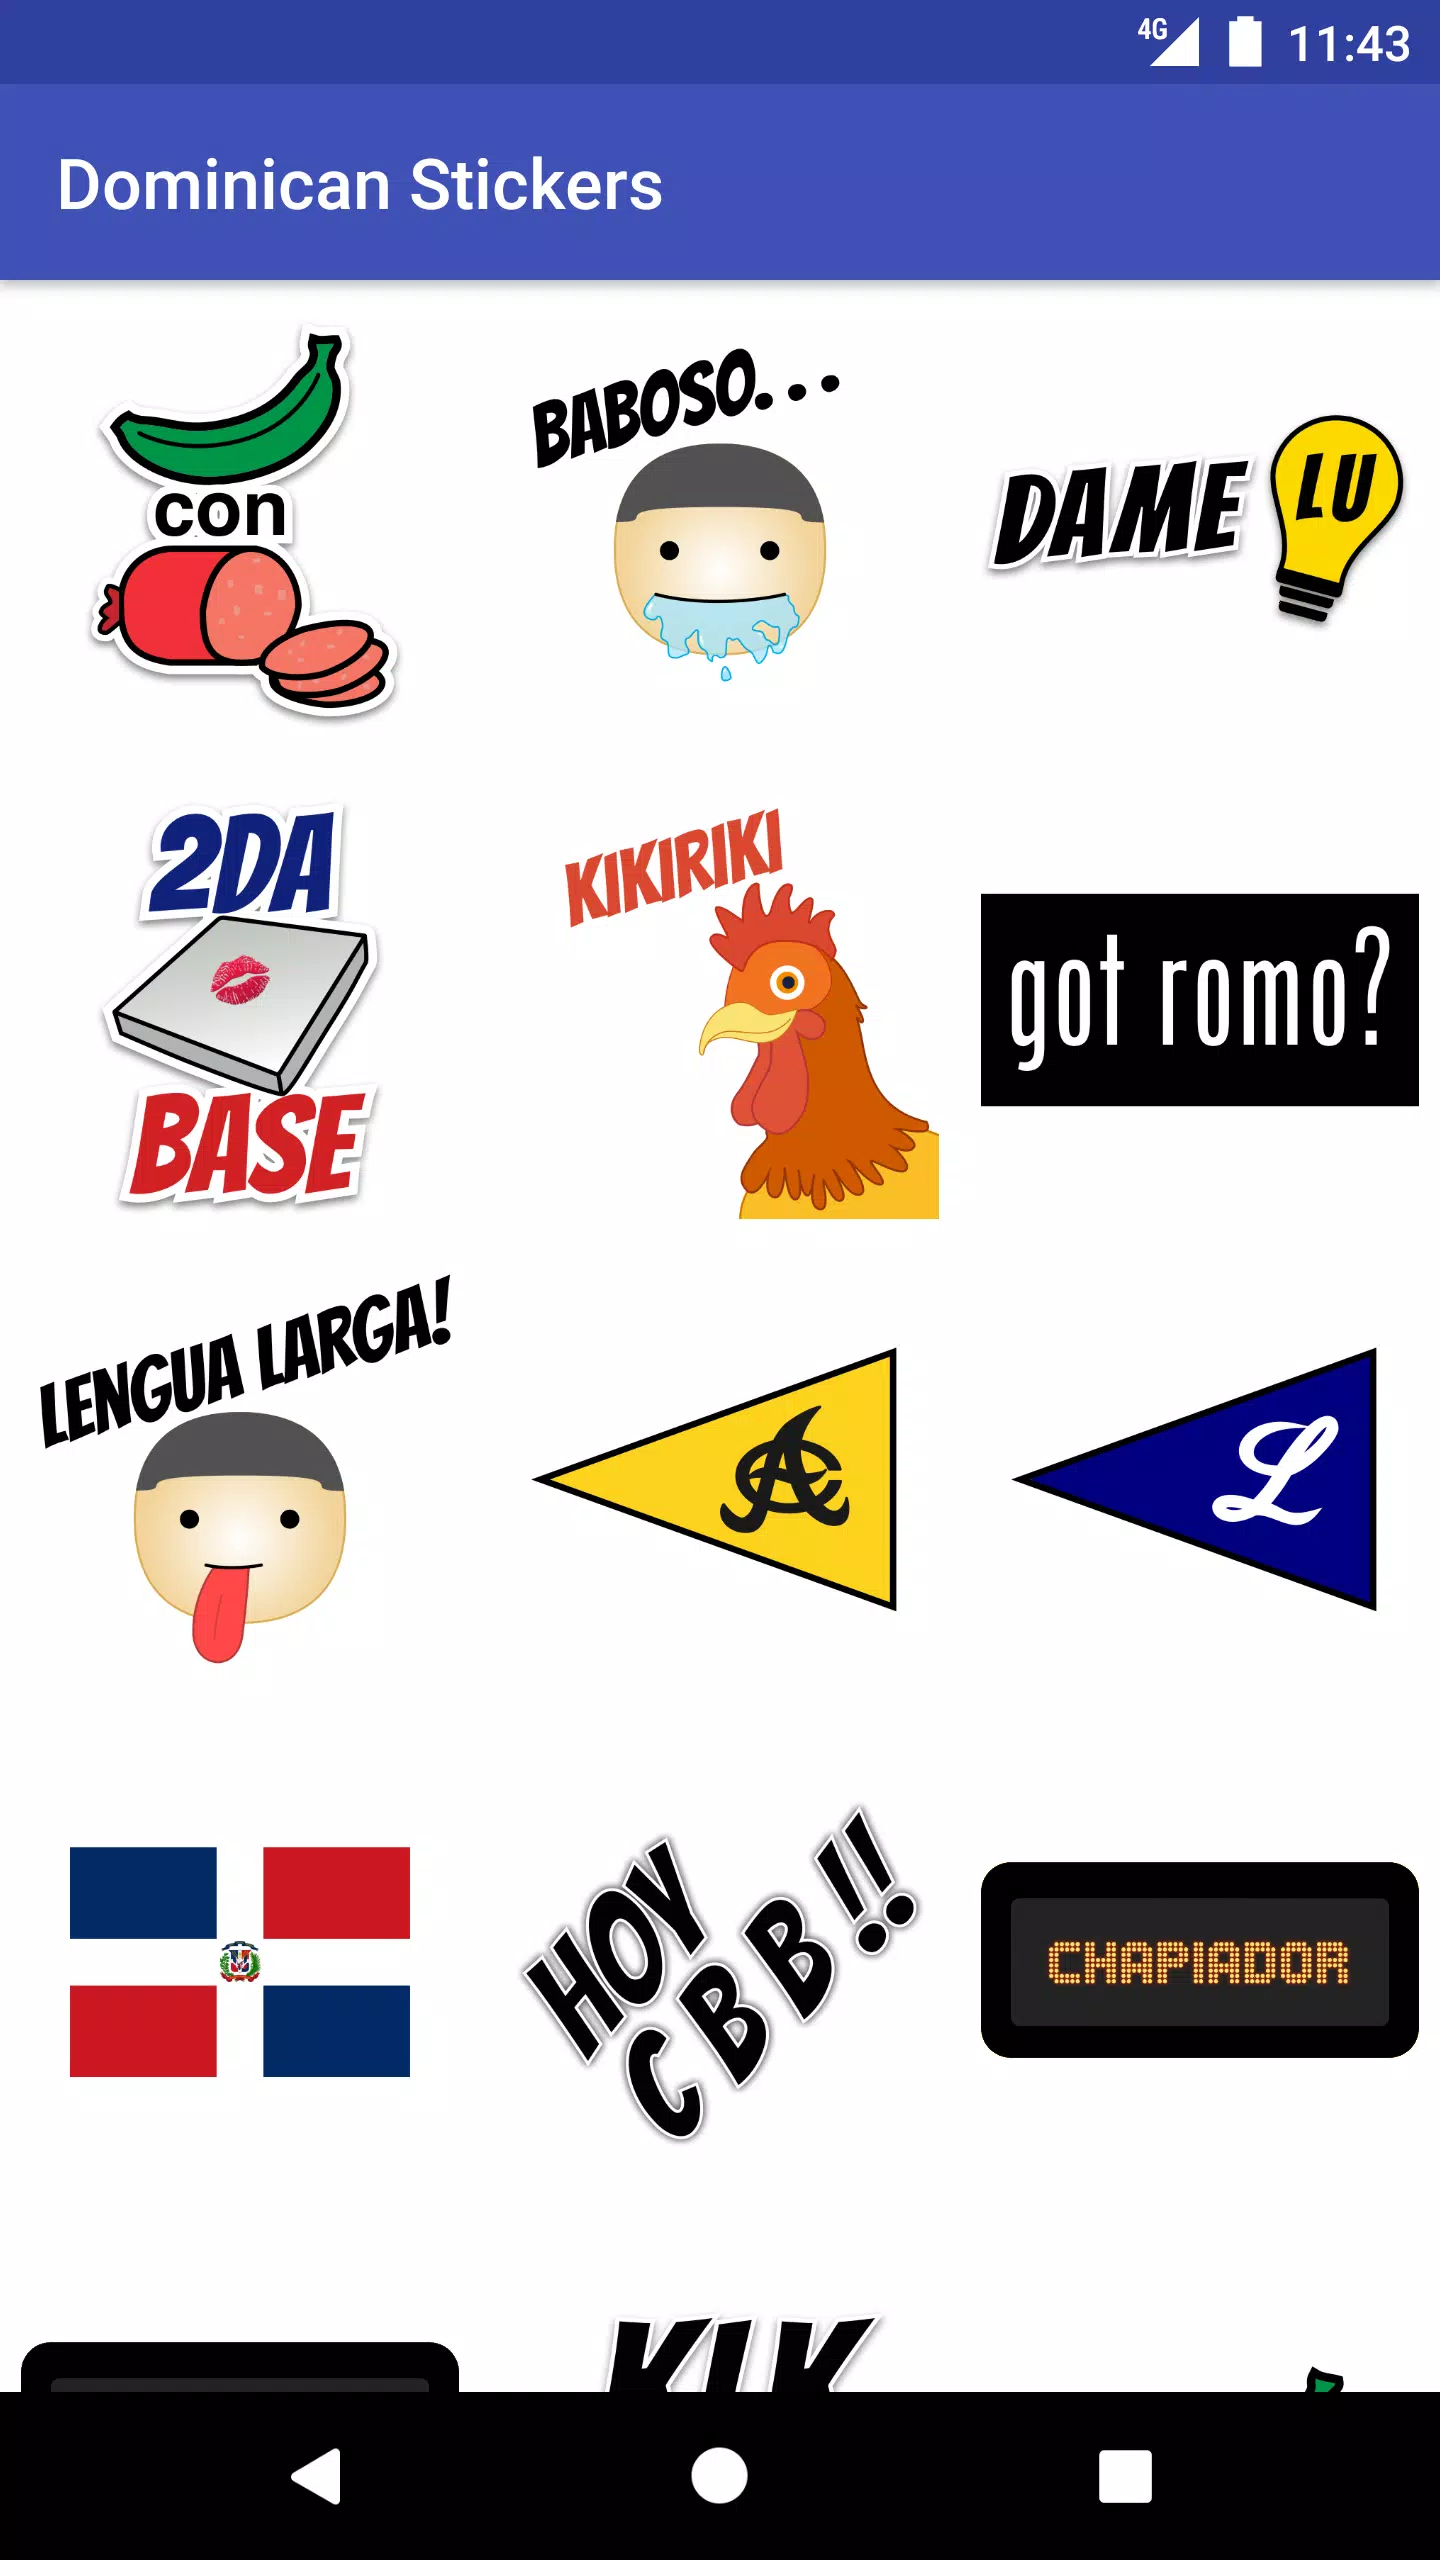 Descarga de APK de Stickers Dominicanos para Android